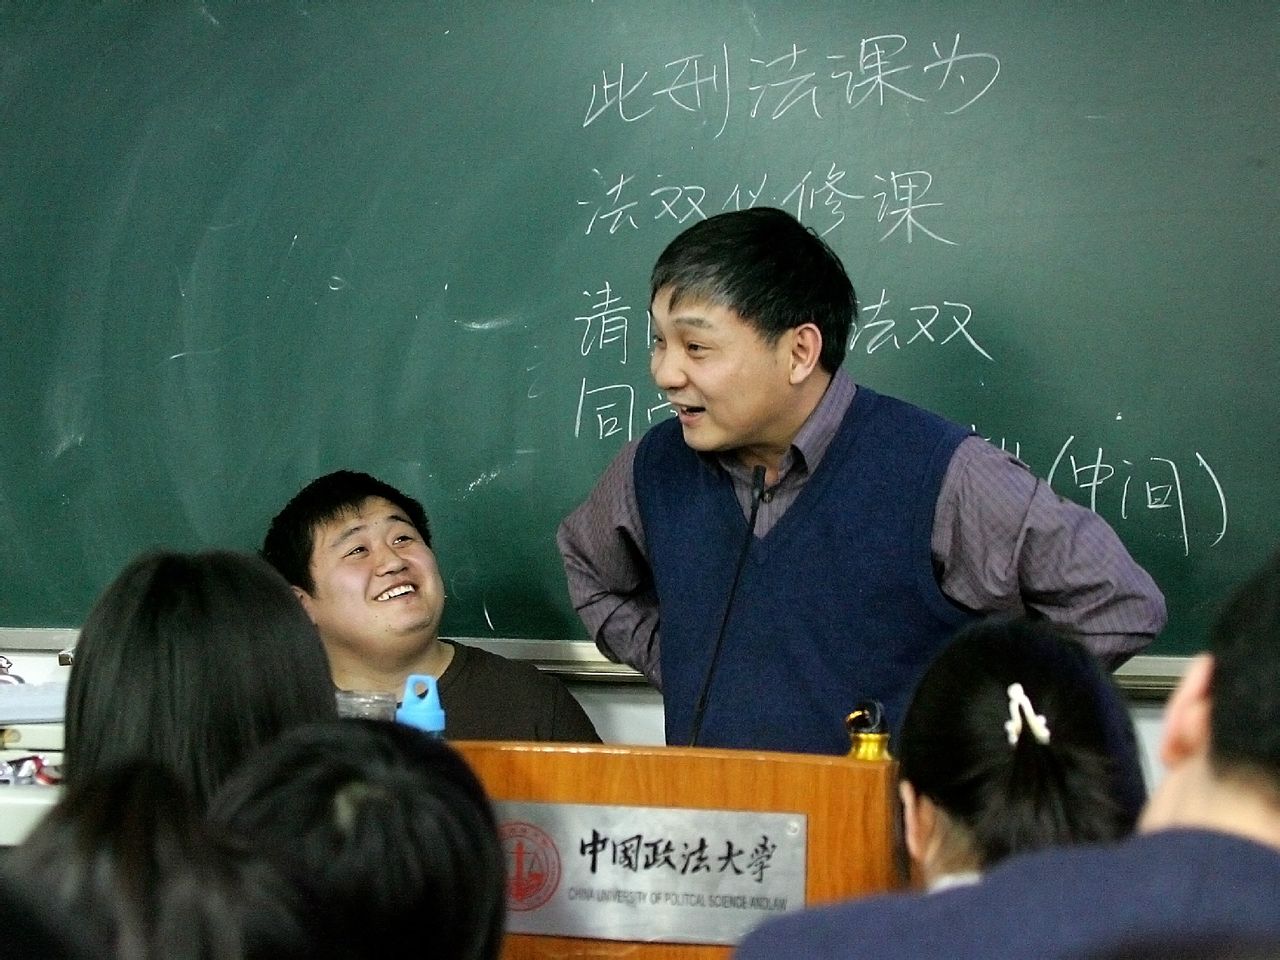 阮齊林教授在授課